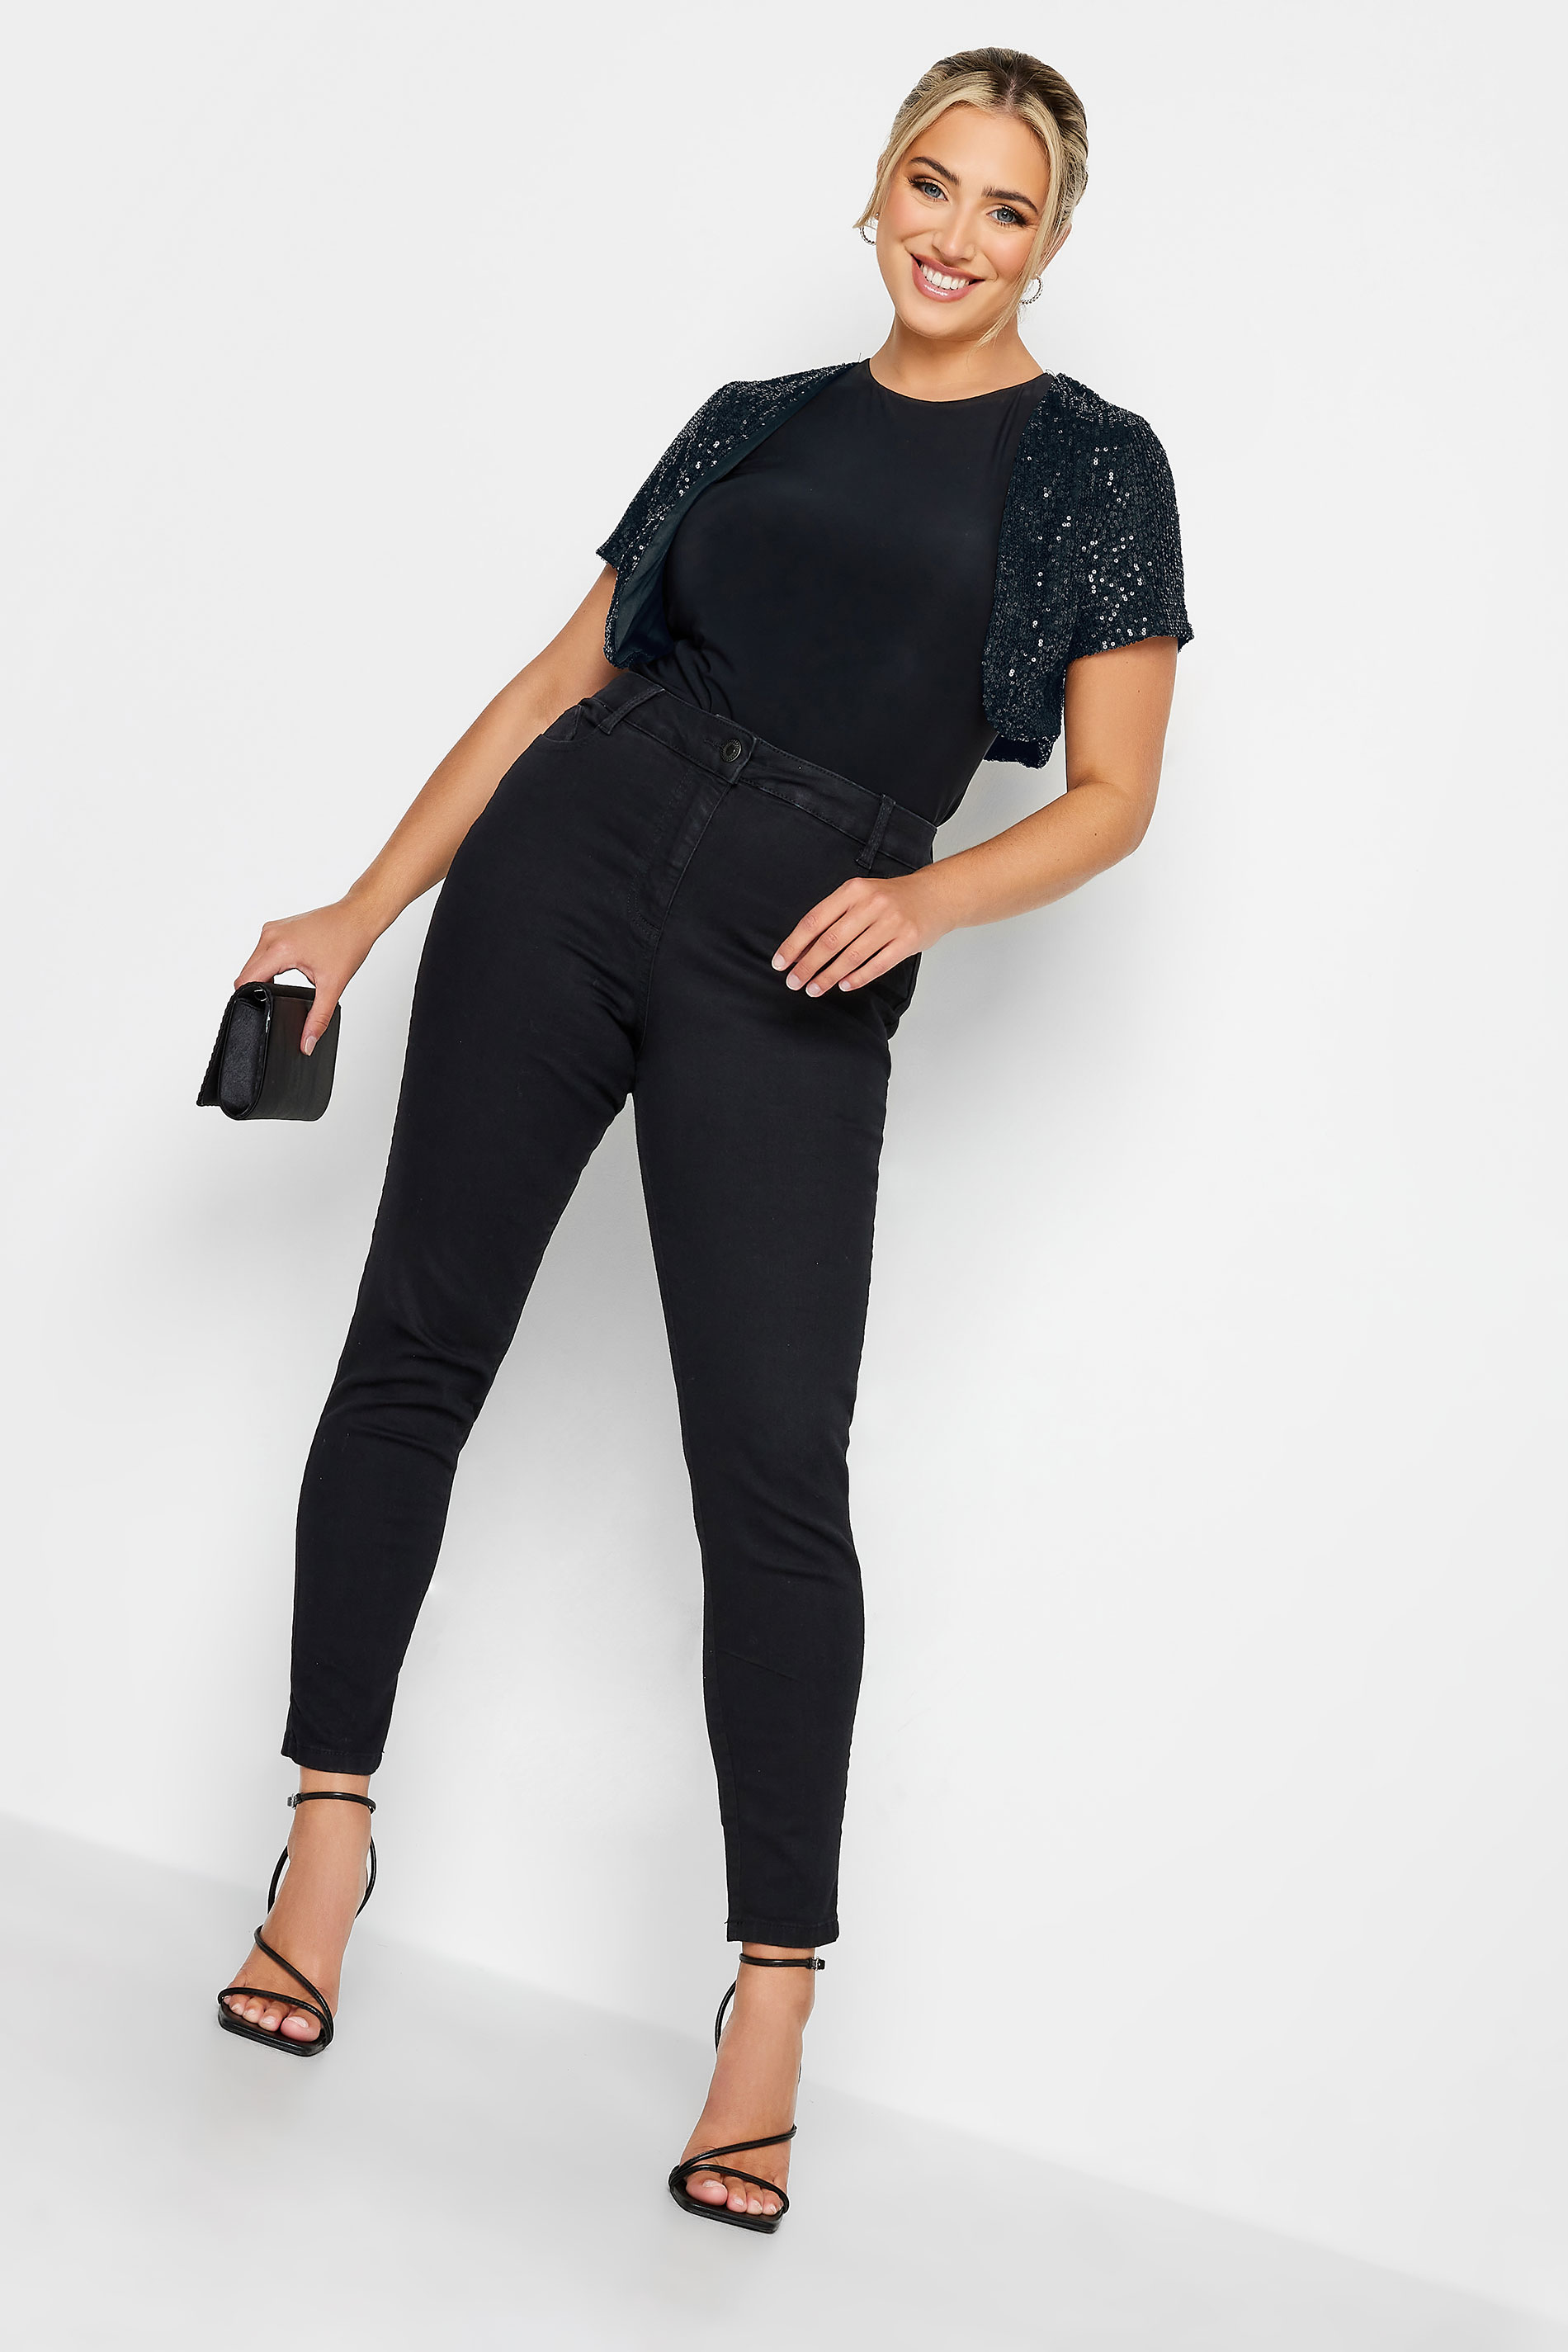 Plus Size YOURS LONDON Black Sequin Embellished Shrug Cardigan | Yours Clothing 3